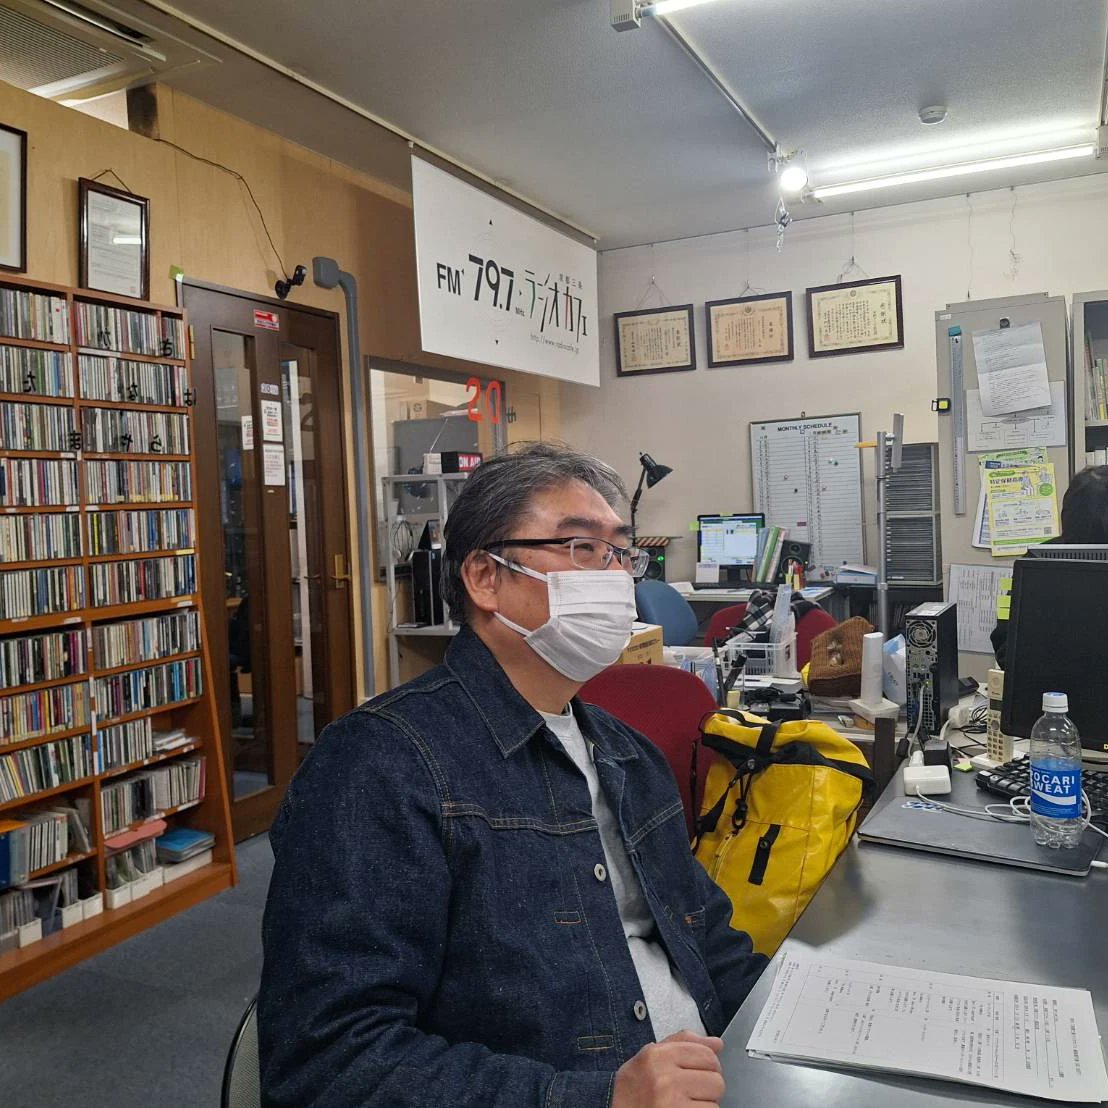 昨日は、FM京都三条ラジオカフェで収録。就労系法人、企業様を連続で紹介してまいります。番組名は、Work and Love. 3月1日の放送です。 先ずは、亀岡の特定非営利活動法人　障害・高齢者就労支援センター　LINK'Sの理事長、熊本先生をお招きし、今一番の熱い事業であるソーシャルファームのご紹介を。